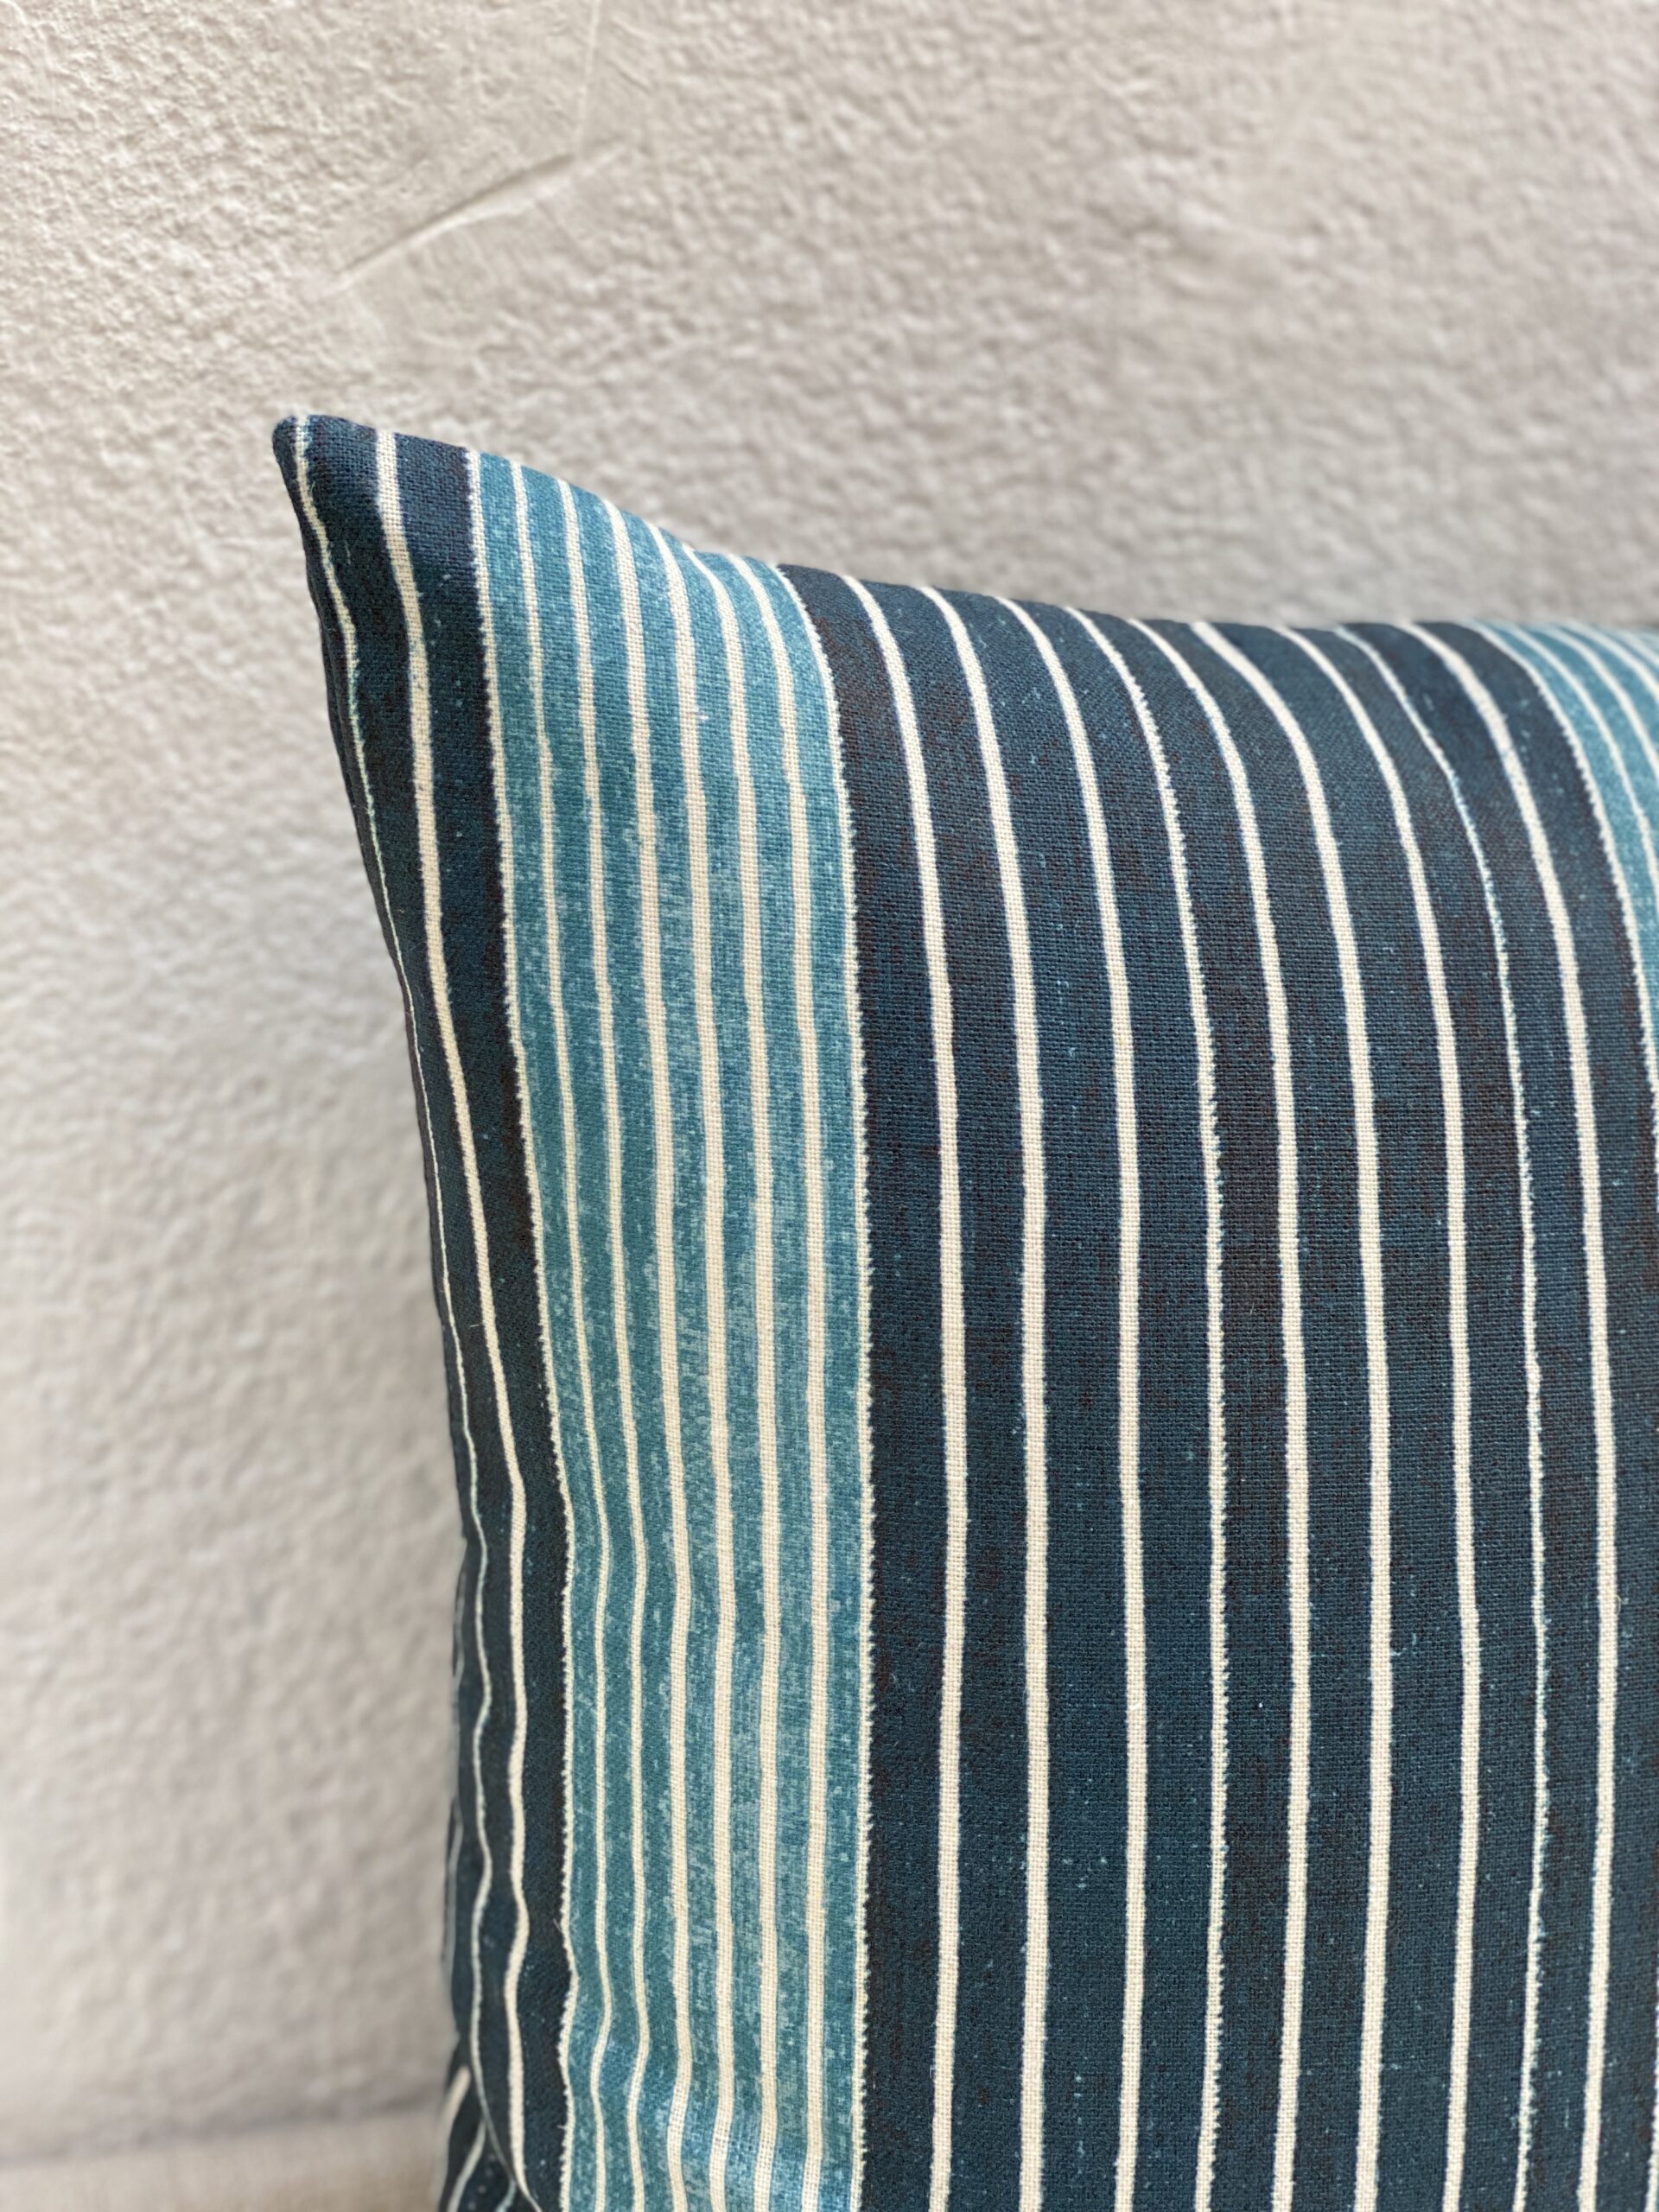 McLaurin & Piercy Mediterranean Stripe Pillows